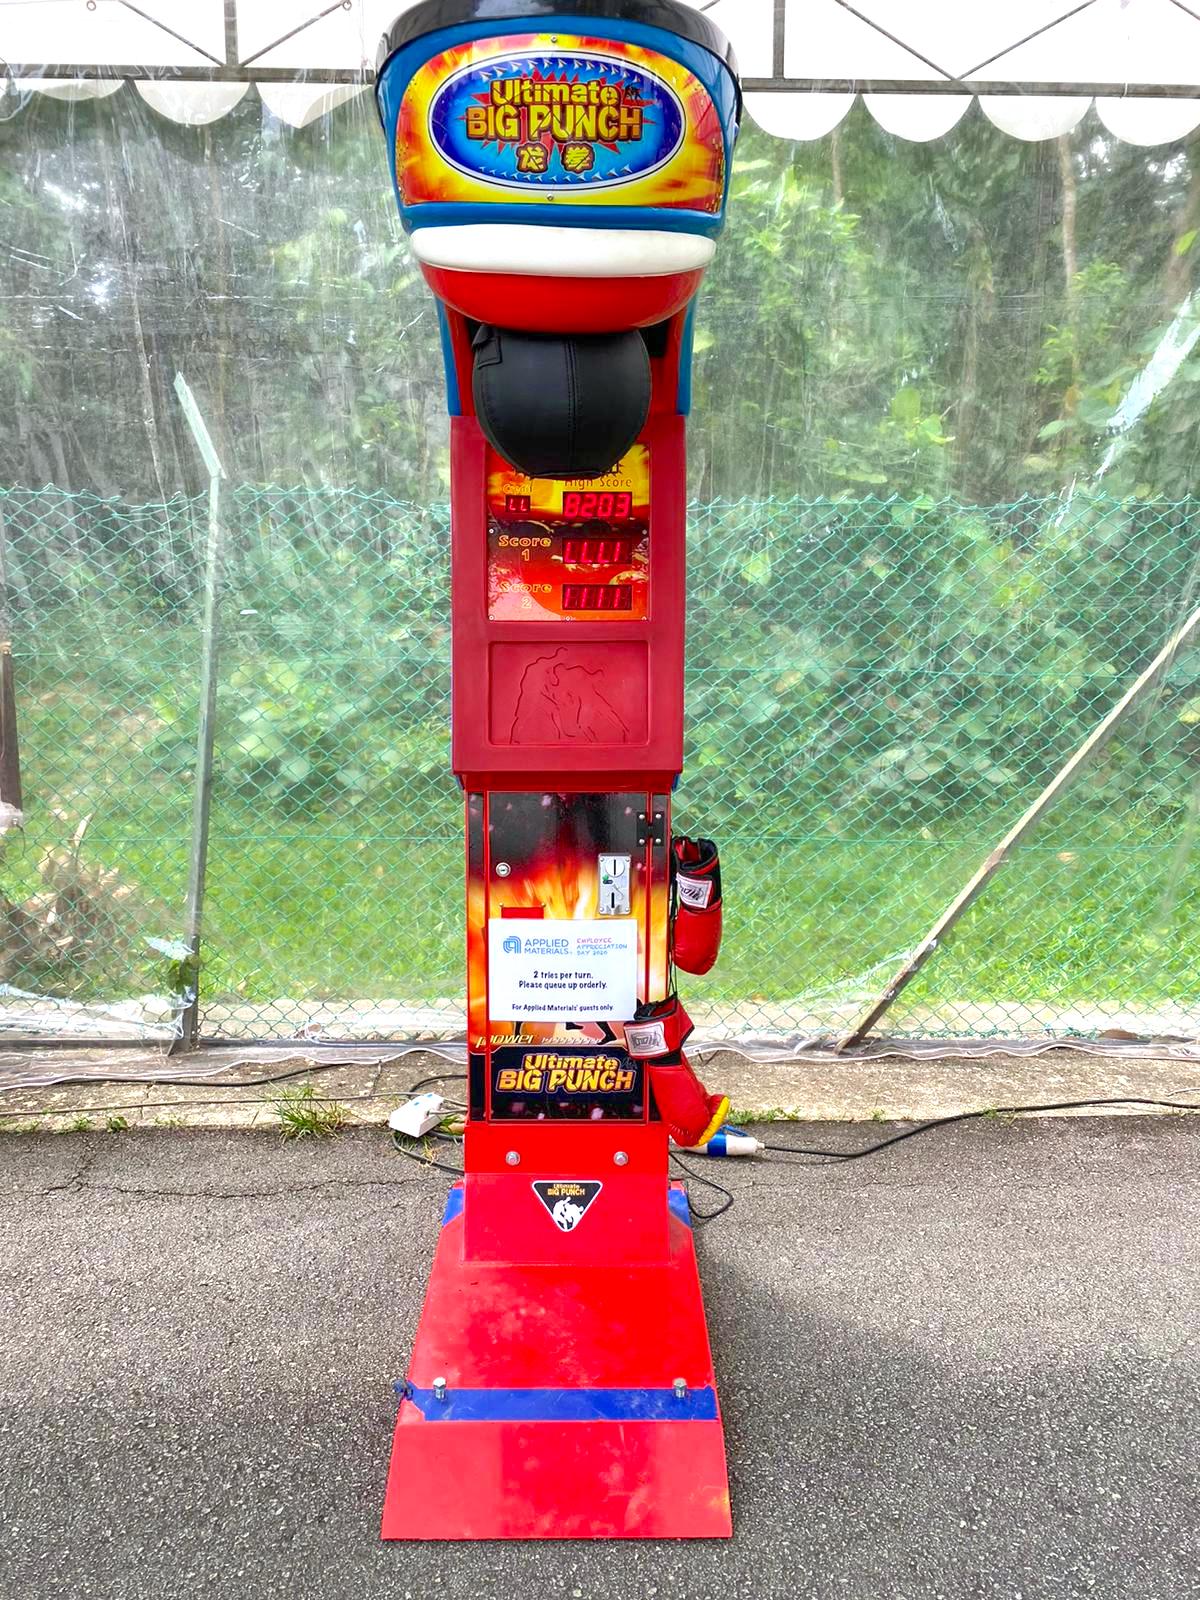 Punching Arcade Machine Rental Singapore